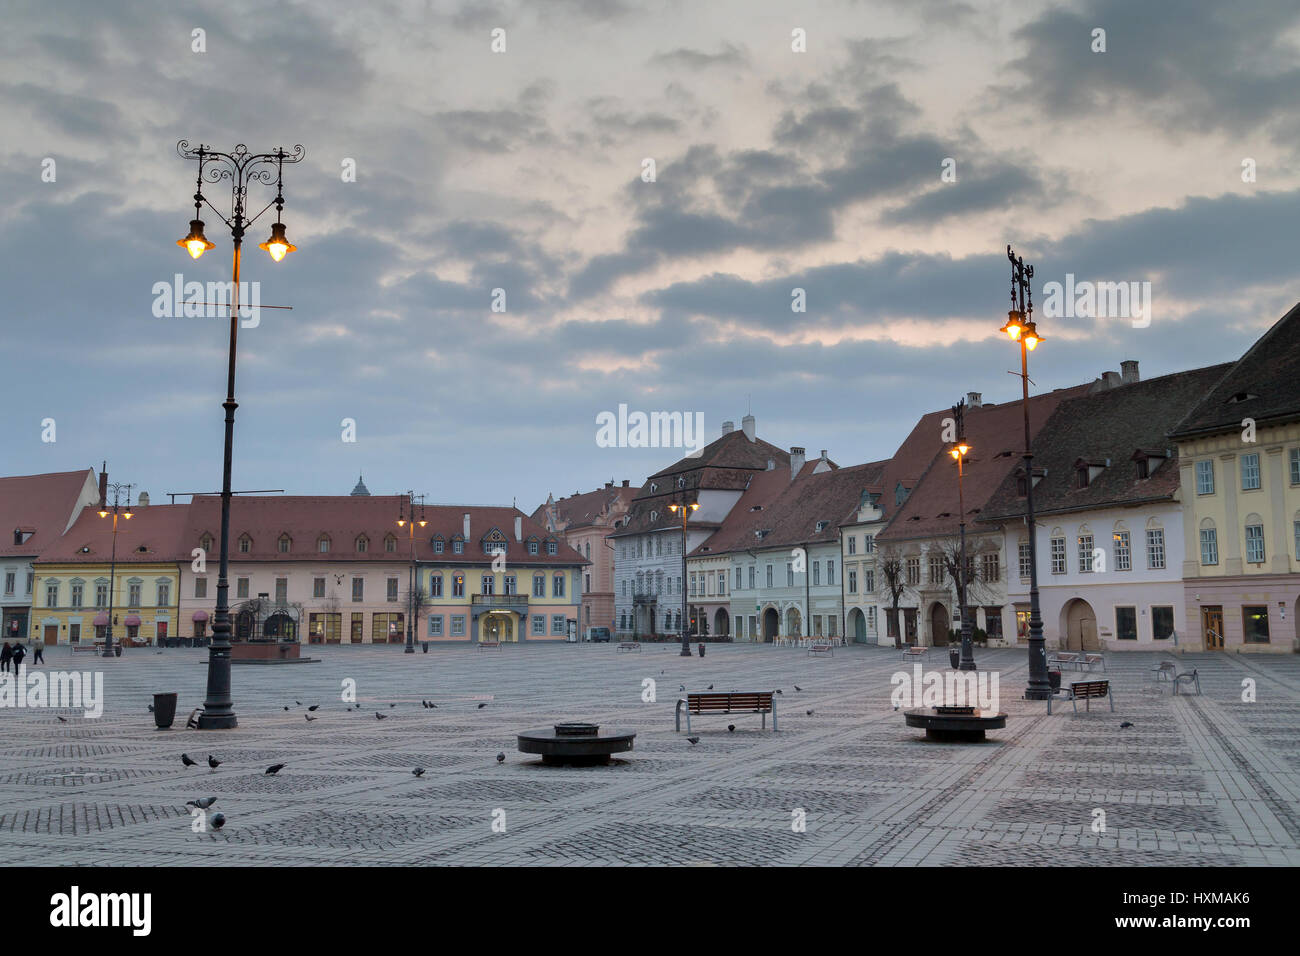 SIBIU ROUMANIE, vue de la vieille ville de Sibiu townsquare Roumanie Banque D'Images